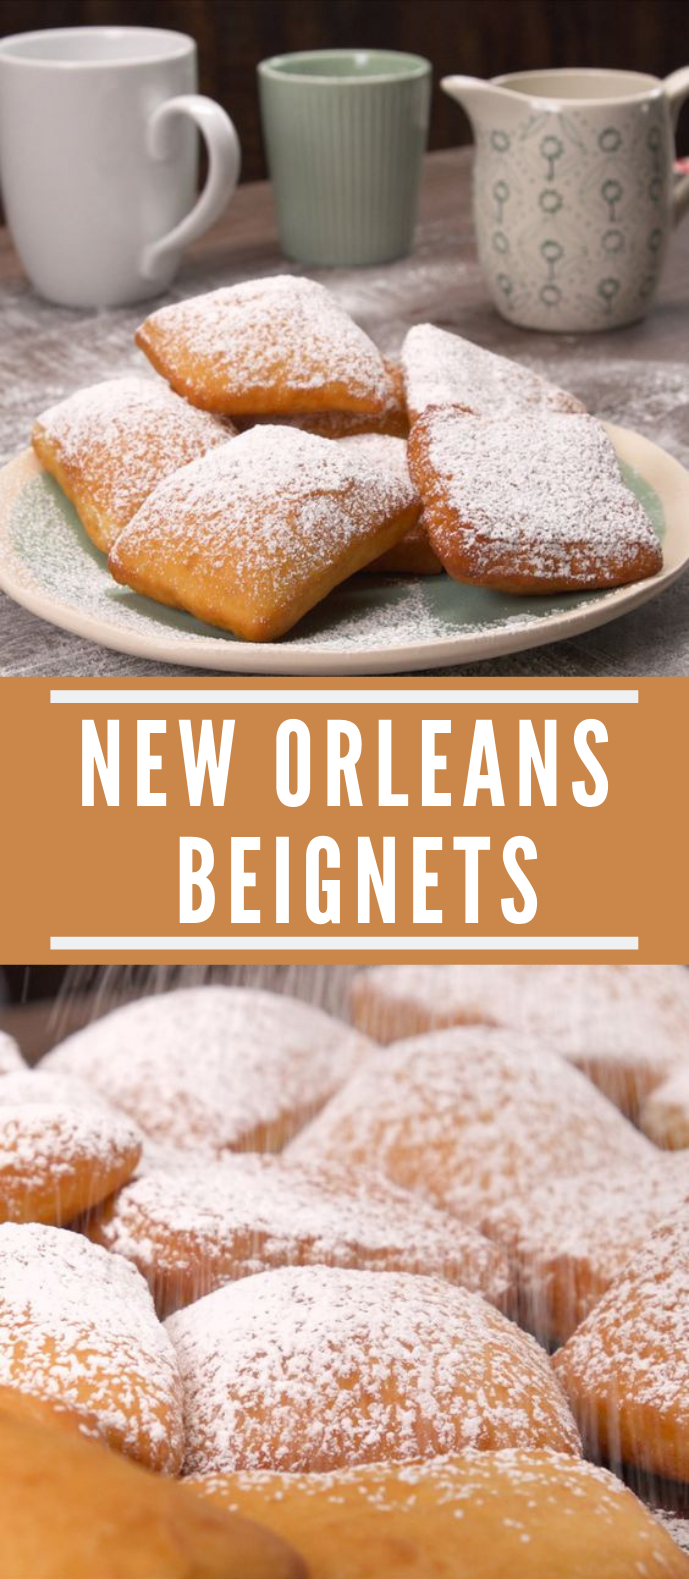 New Orleans Beignets #Desserts #Sweet